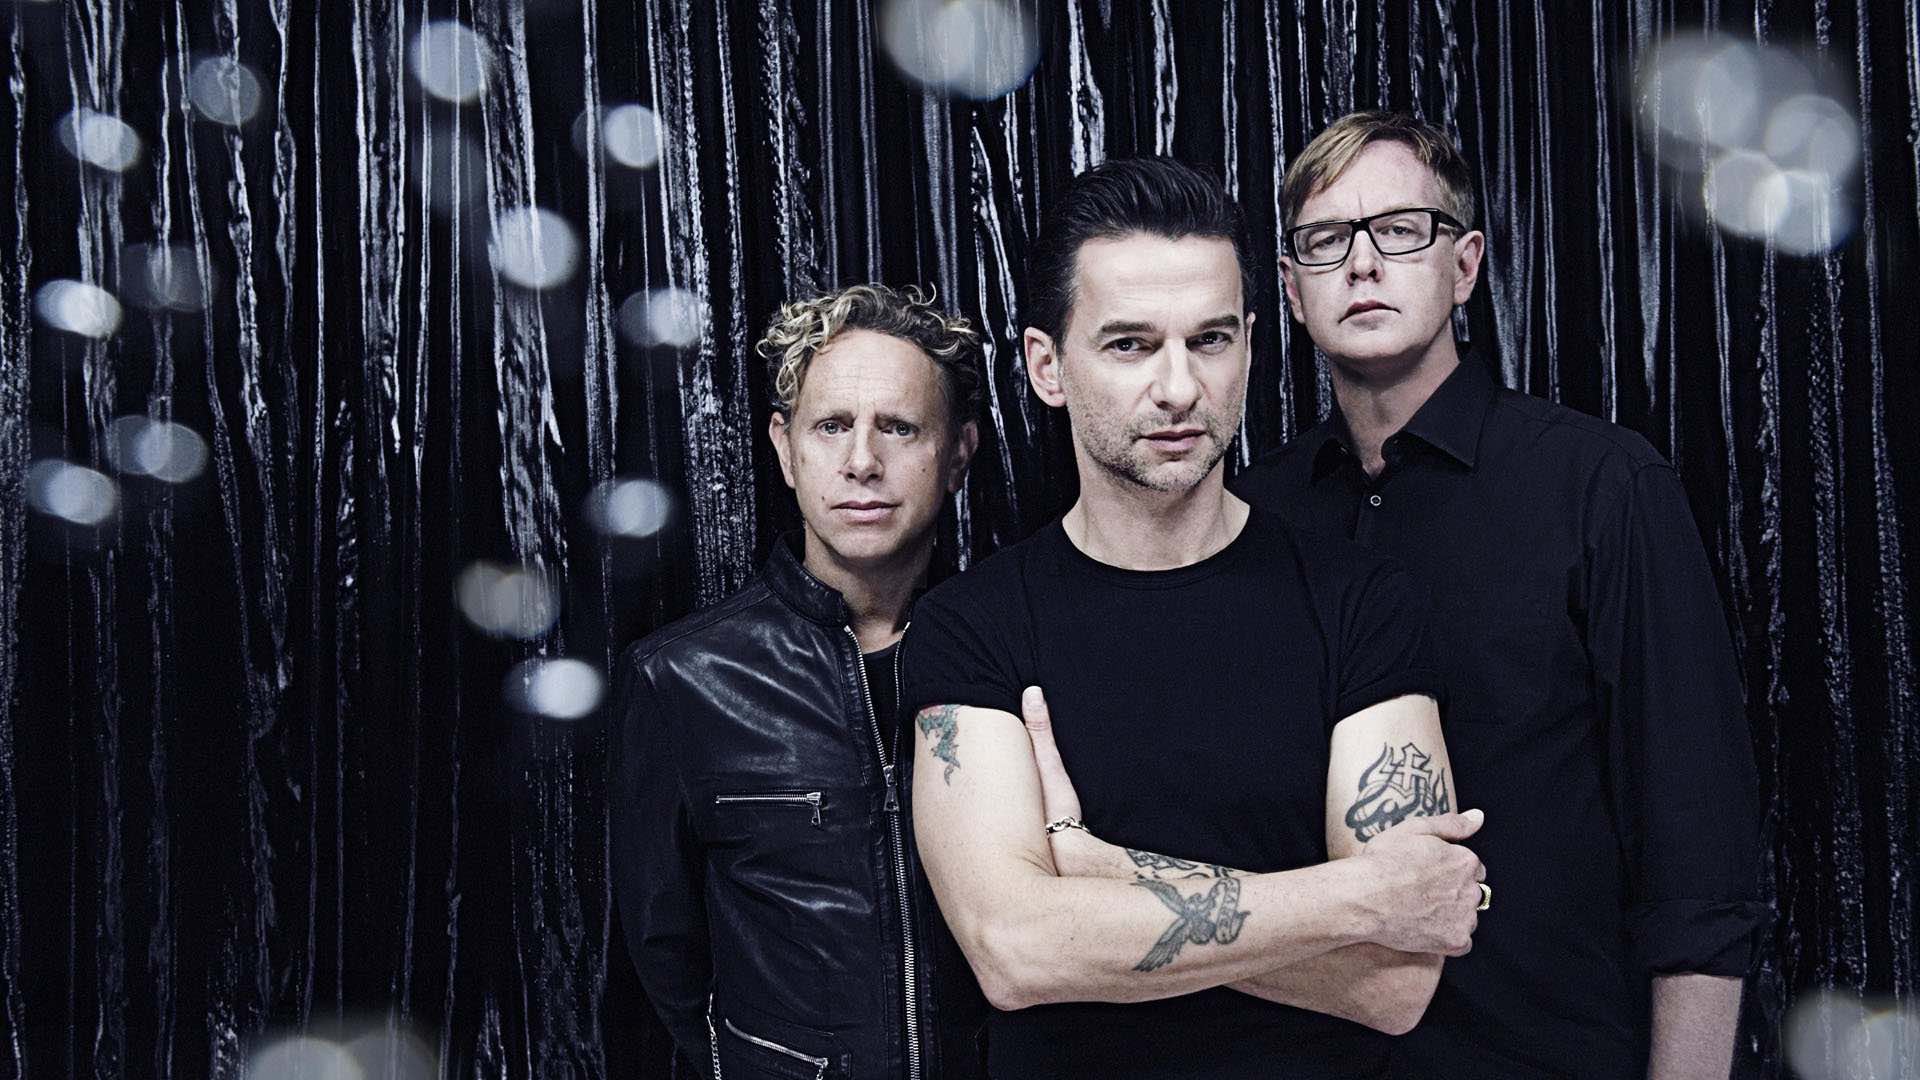 Saldrá al mercado un nuevo box set de los sencillos del 'Ultra' de Depeche Mode